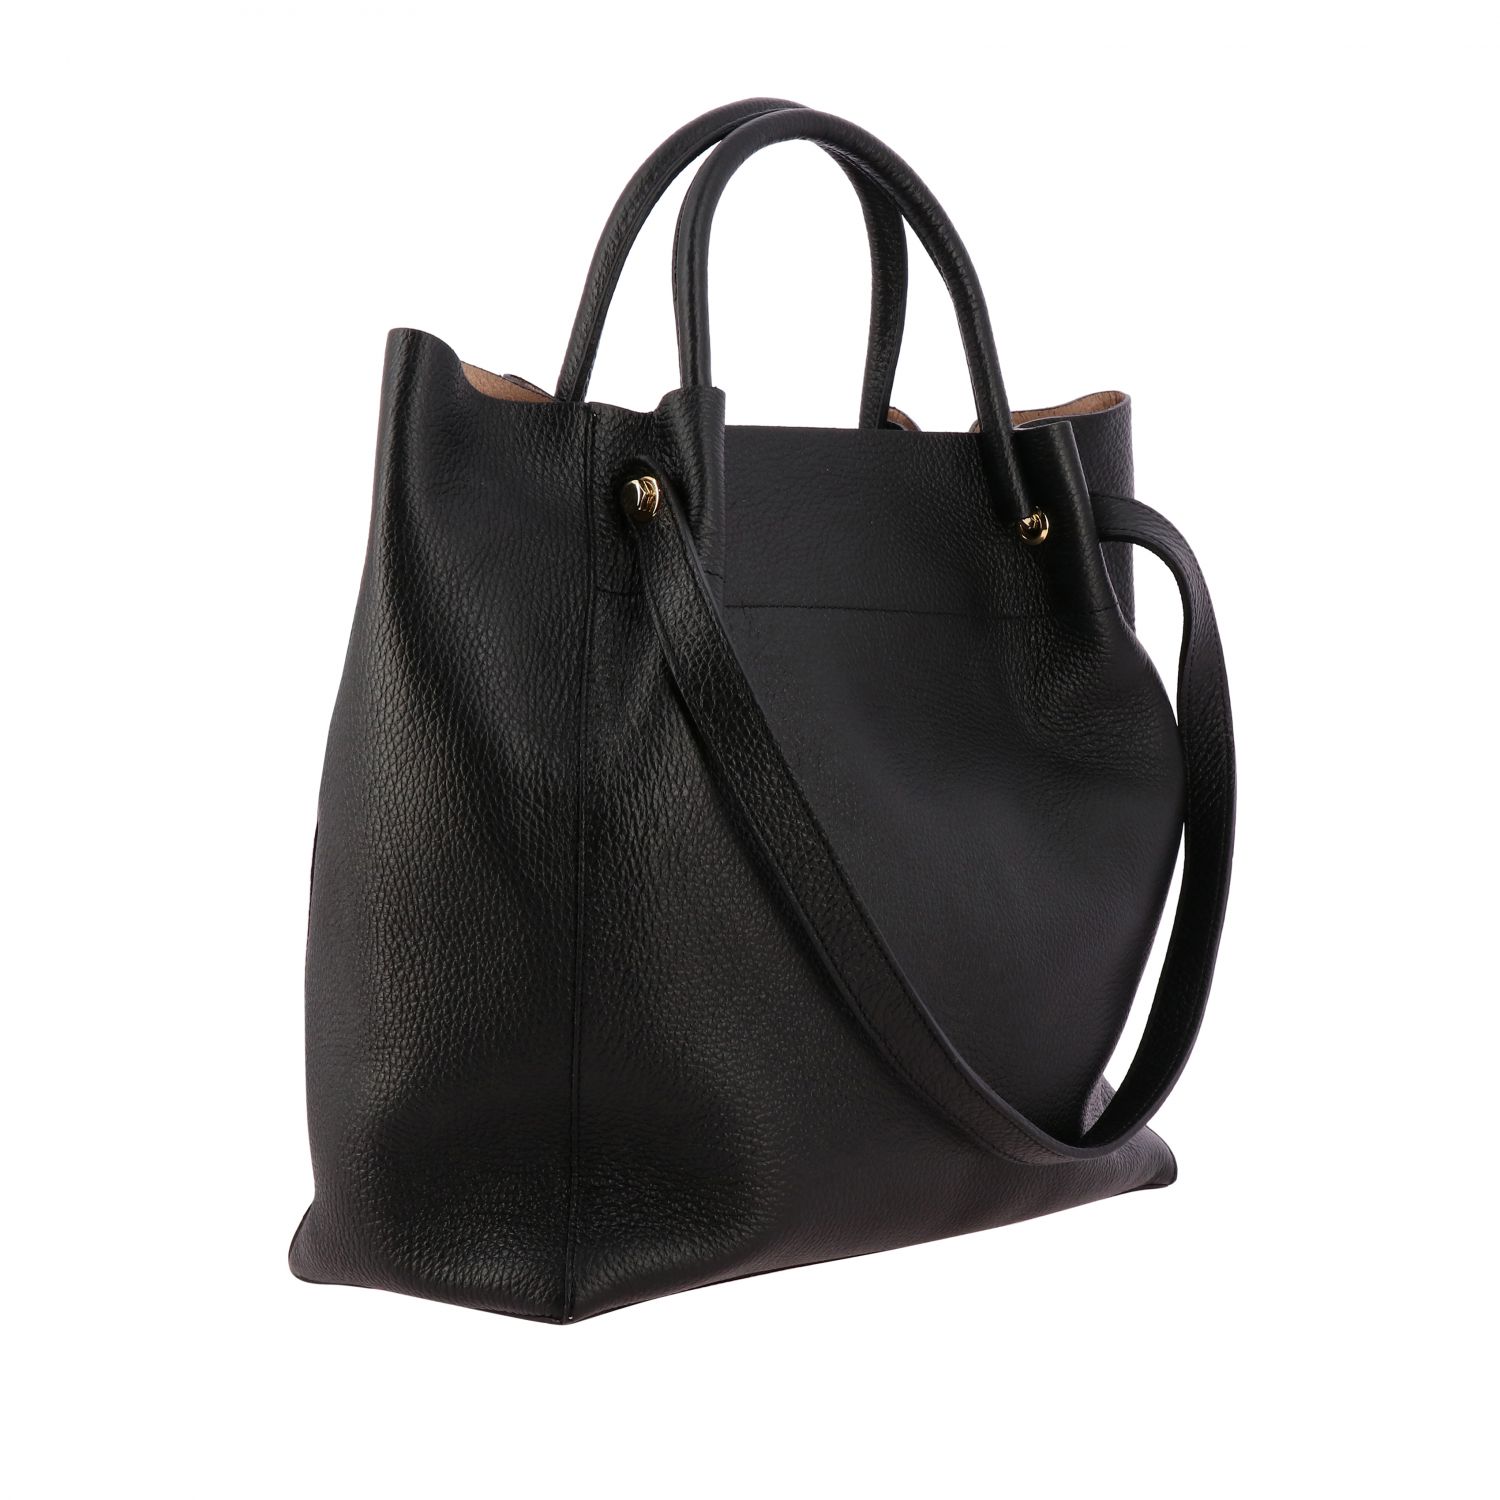 Lancaster Paris Outlet: Shoulder bag women - Black | Handbag Lancaster ...